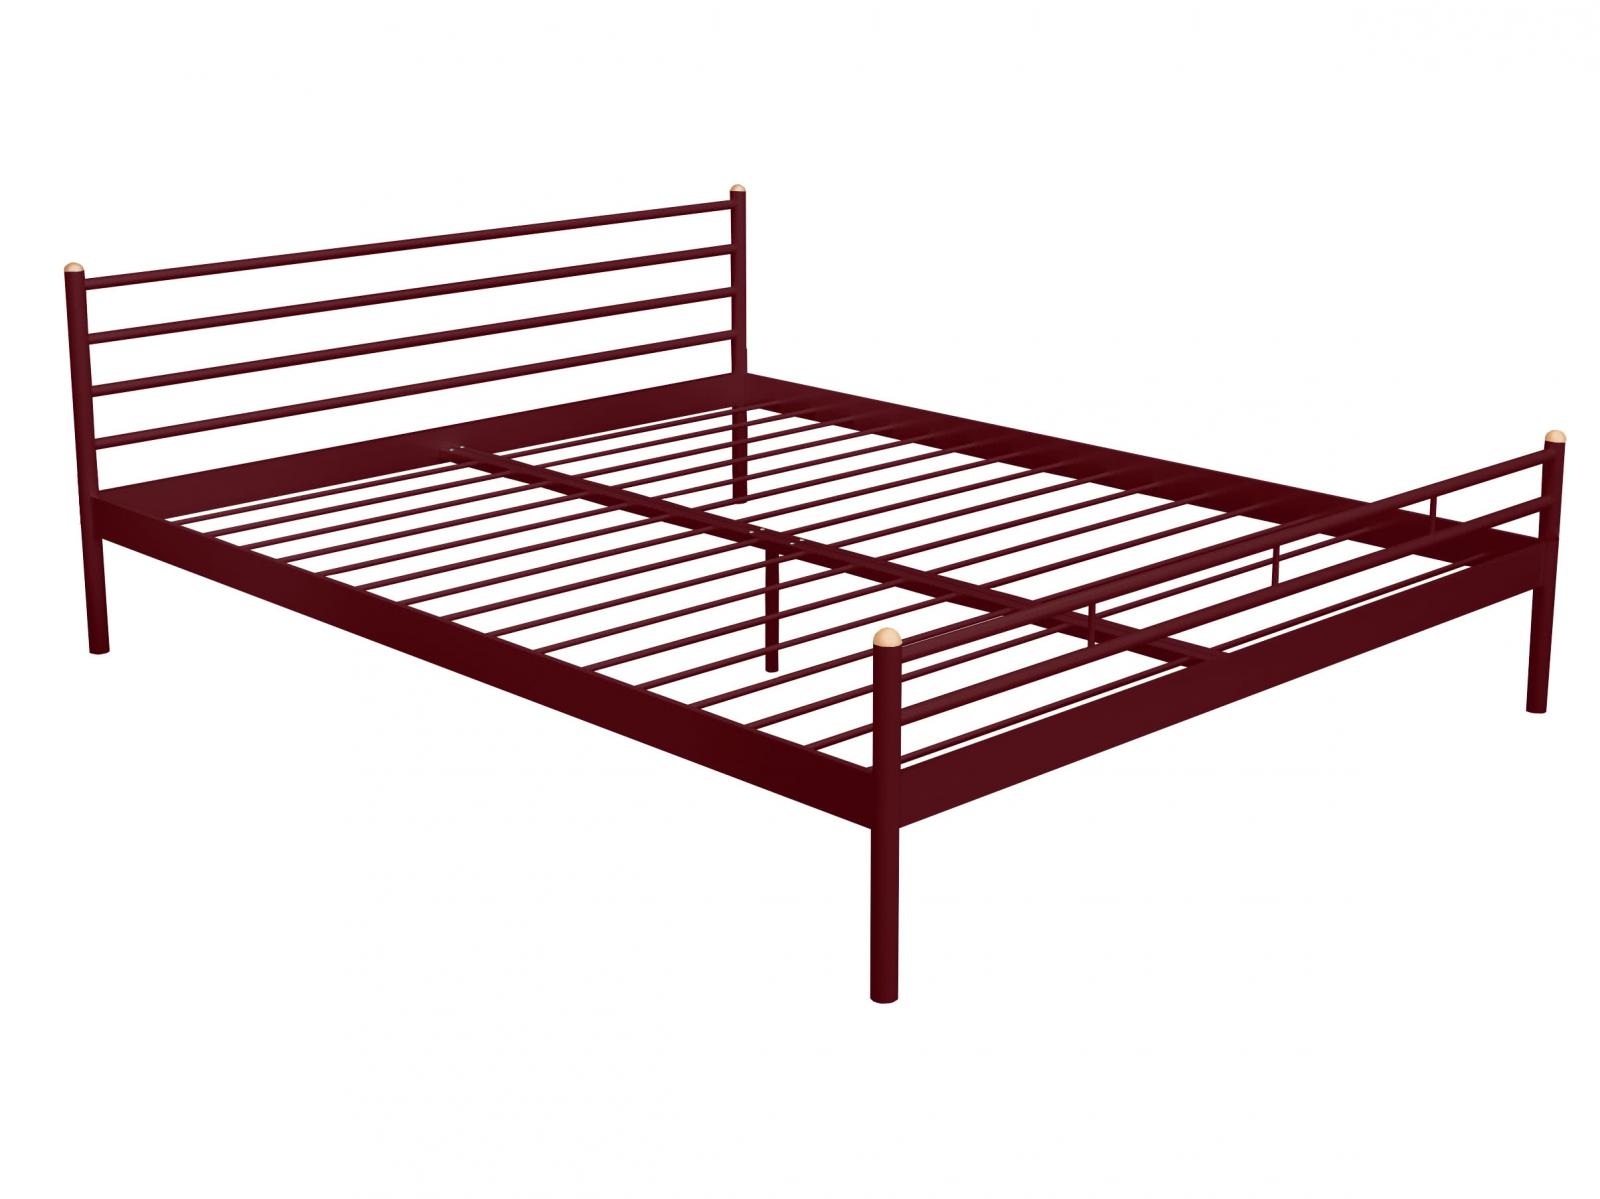 Купить кровать Alitte Кровать Alitte Charlotte, бордо 140 х 200 см бордо дешево на официальном сайте